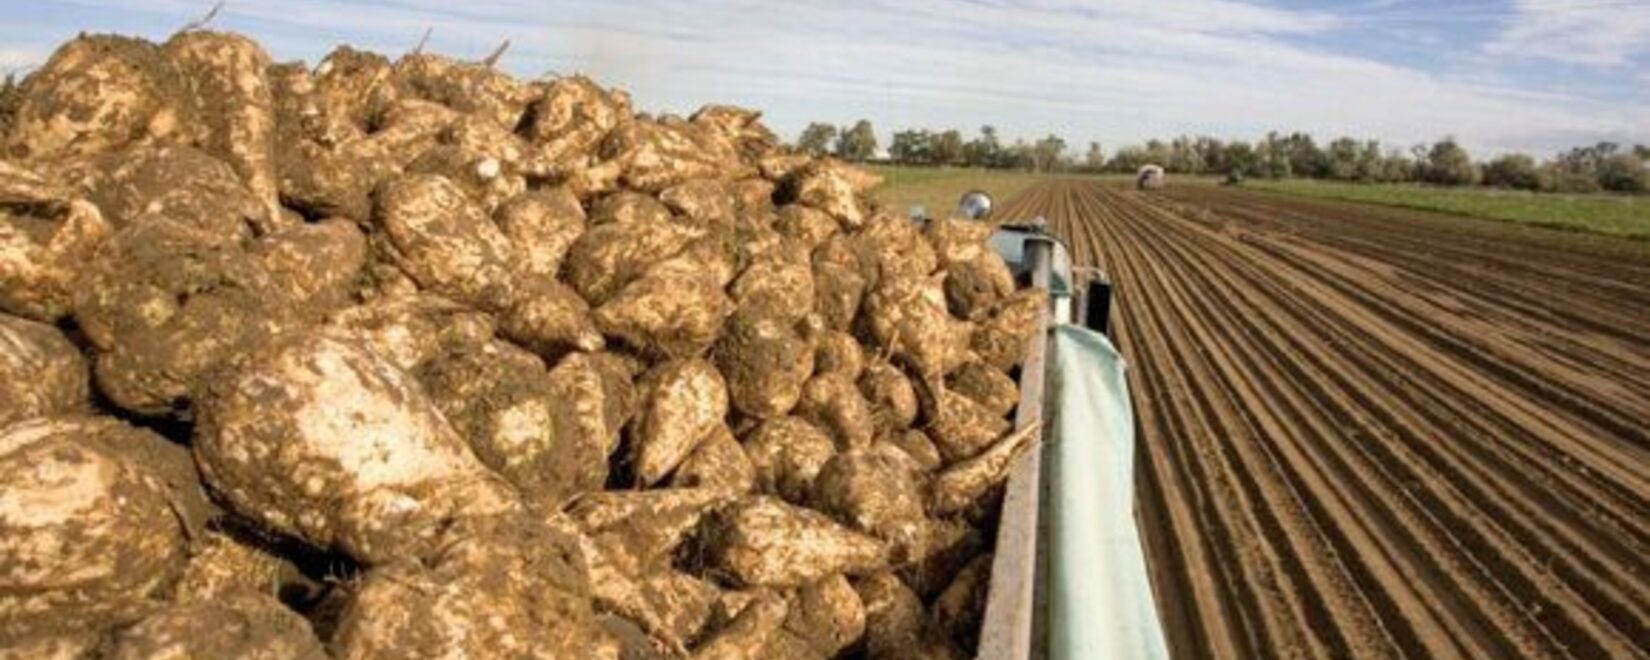 Орловская область экспортировала в Китай близ 2 тыс. тонн жома из свеклы, прошедшего проверку Россельхознадзора